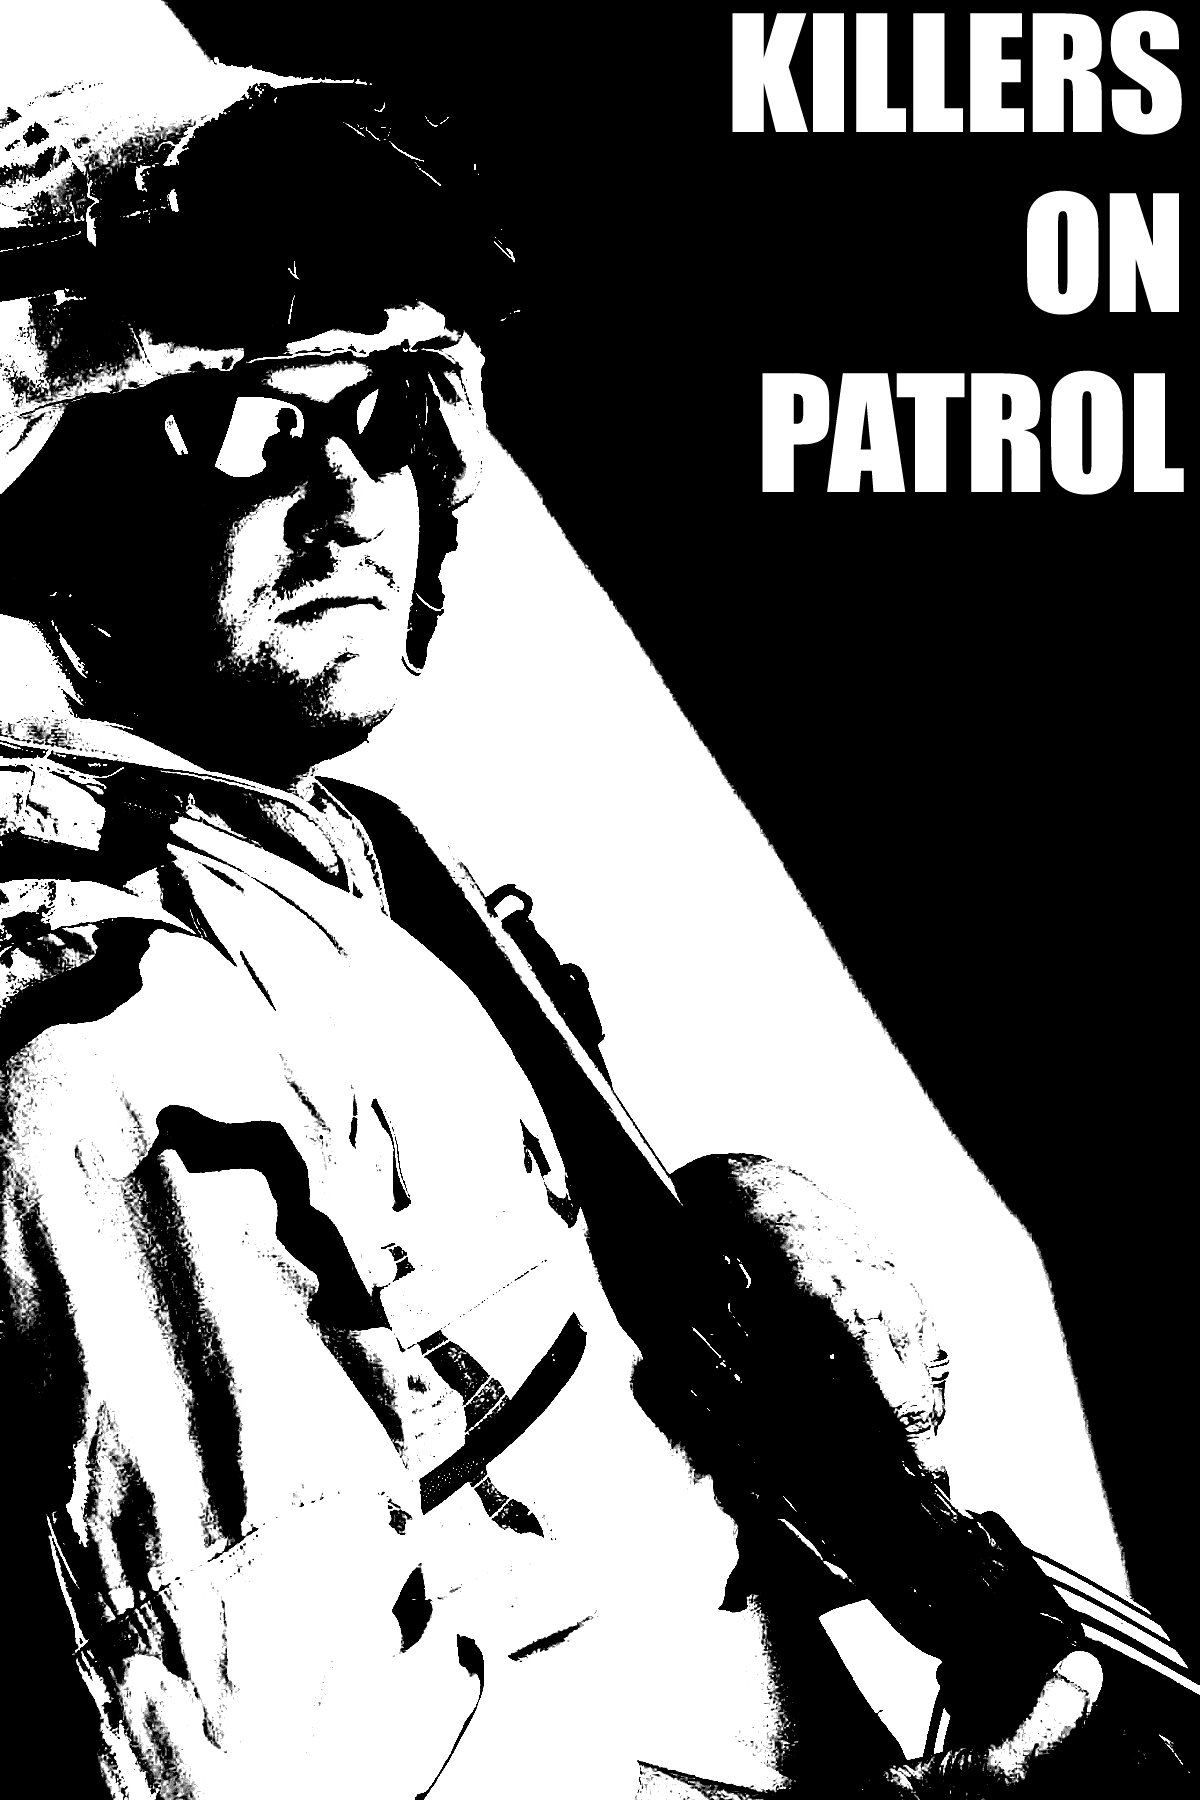 Killers on Patrol